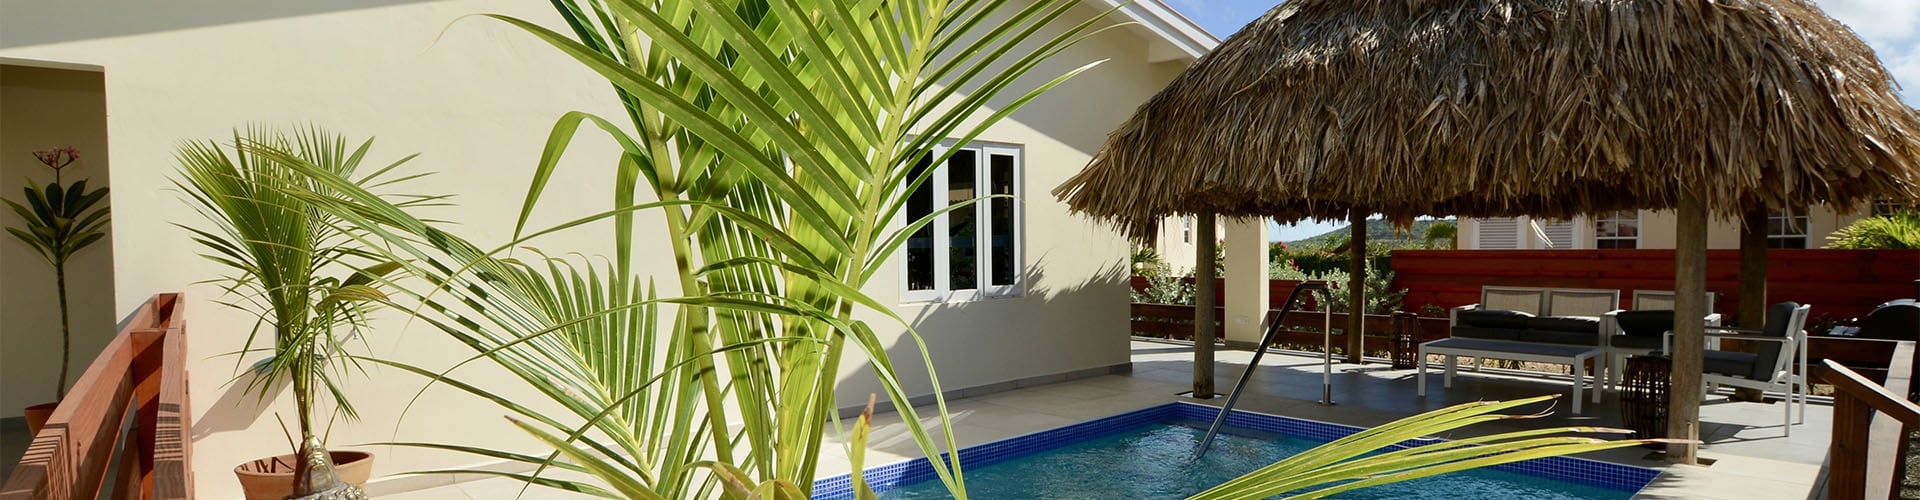 Goedkope villa met zwembad huren op Curacao